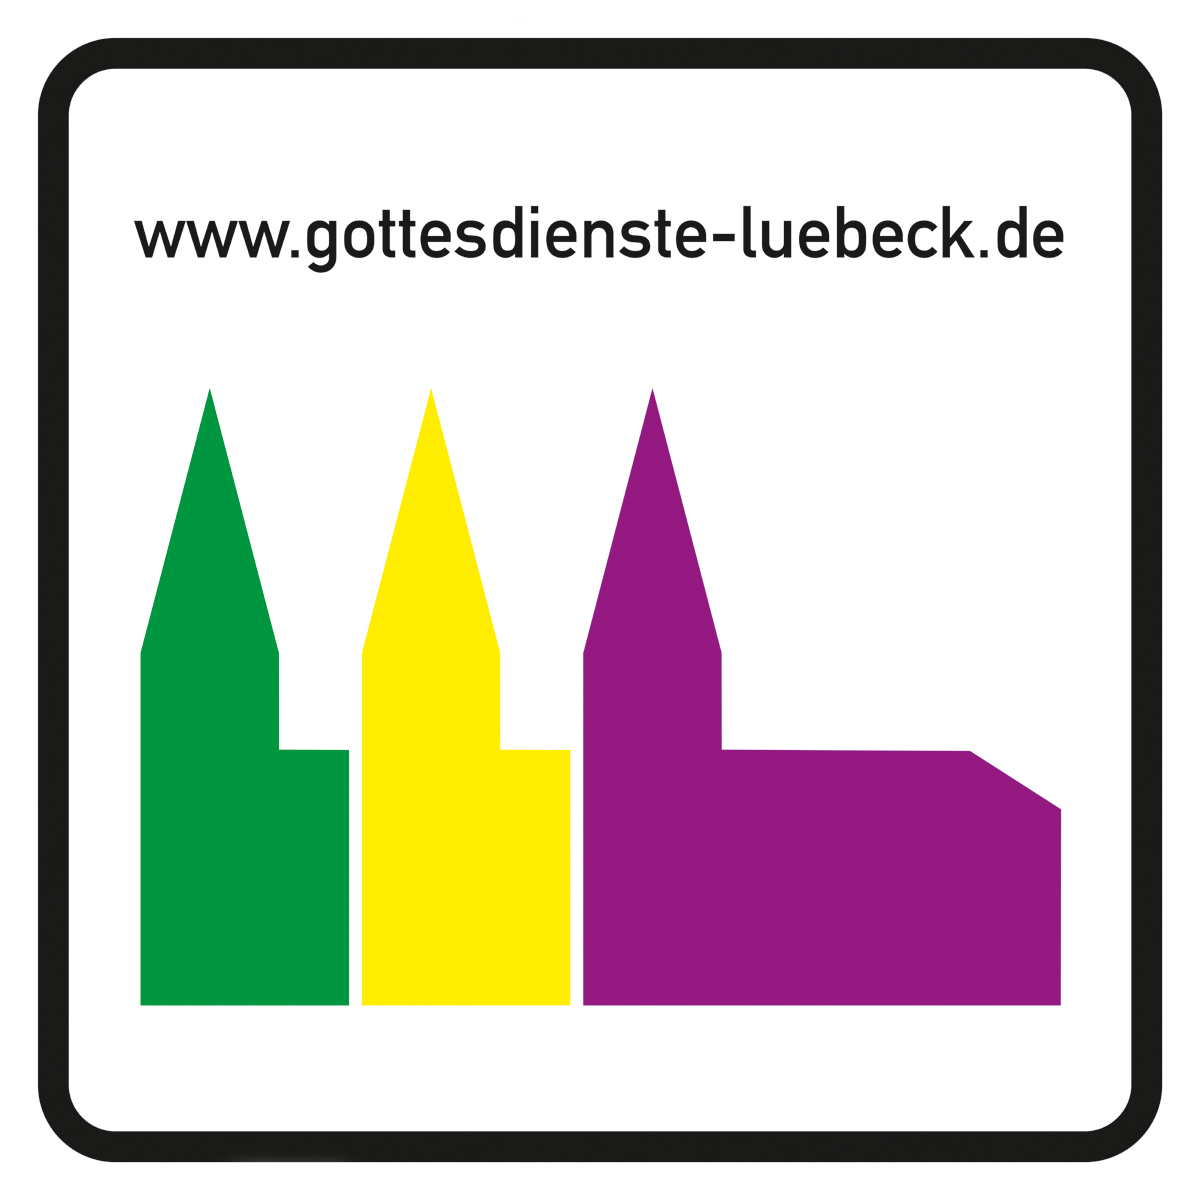 Logo der Gottesdienste-Lübeck: Drei Kirchen stehen in drei farben nebeneinander, v.l. grün, gelb und lila, darüber der Schriftzug www.gottesdienste-luebeck.de